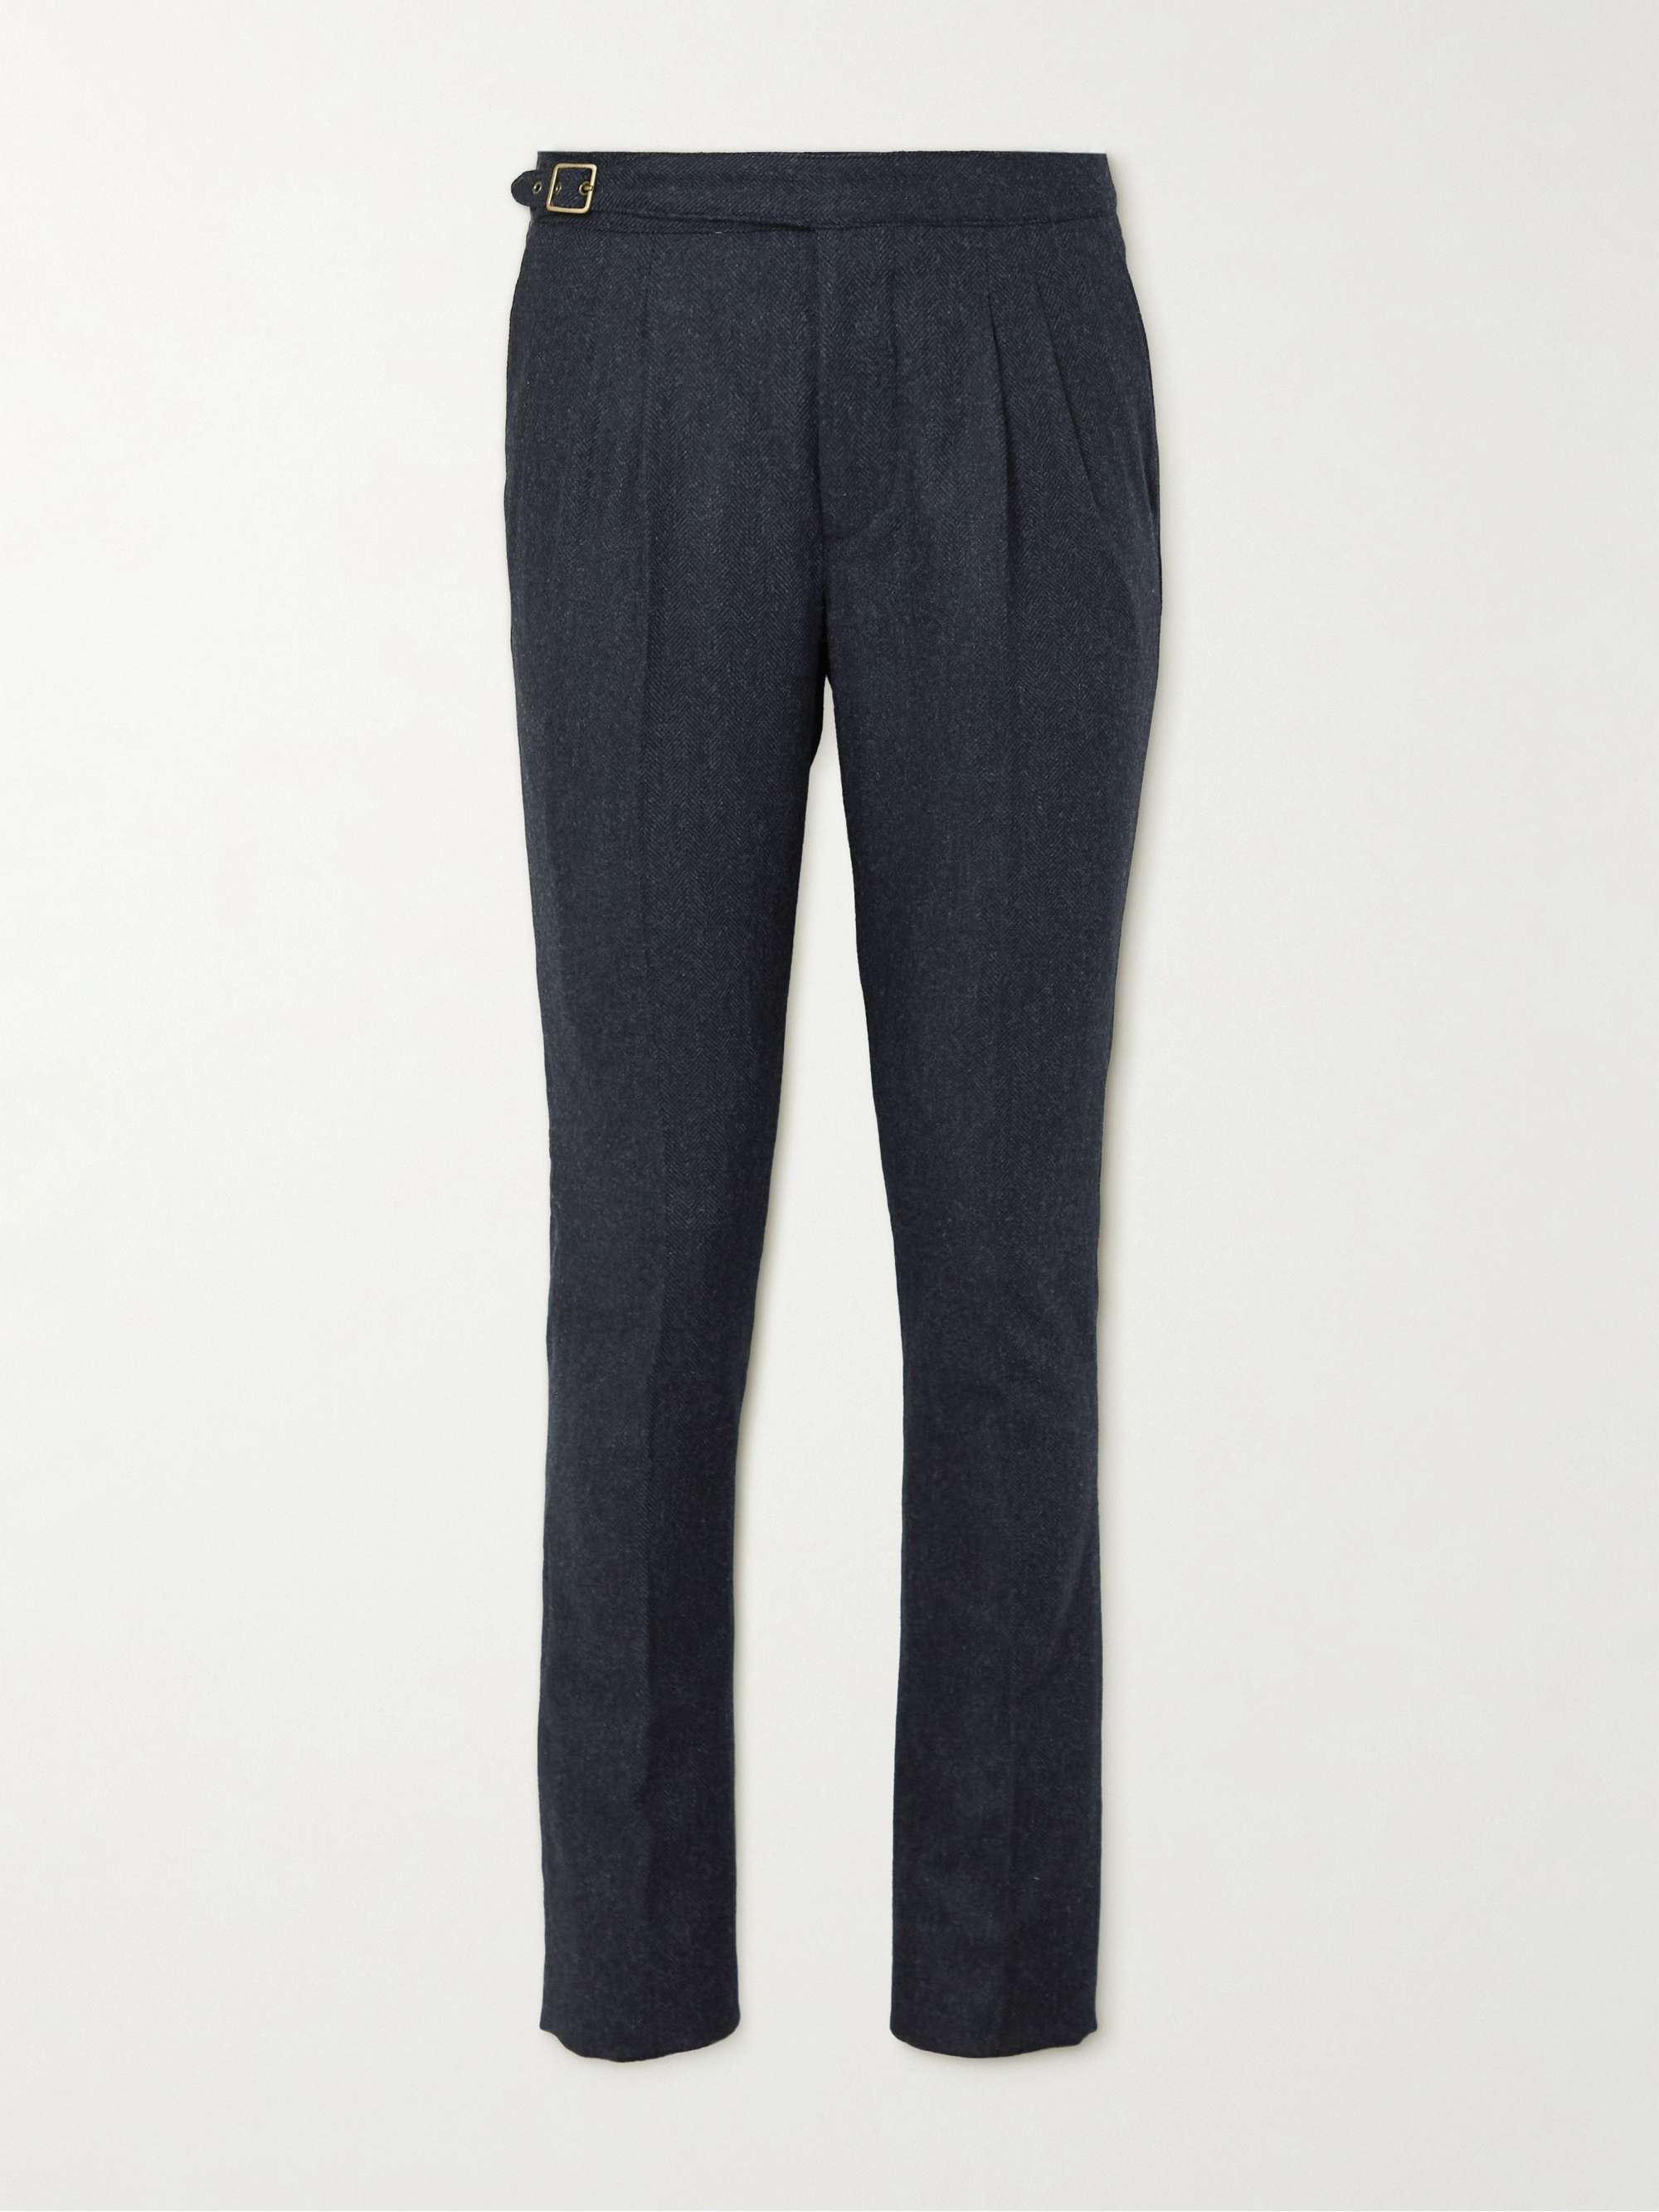 PURDEY Mayfair Slim-Fit Pleated Herringbone Wool-Blend Tweed Trousers